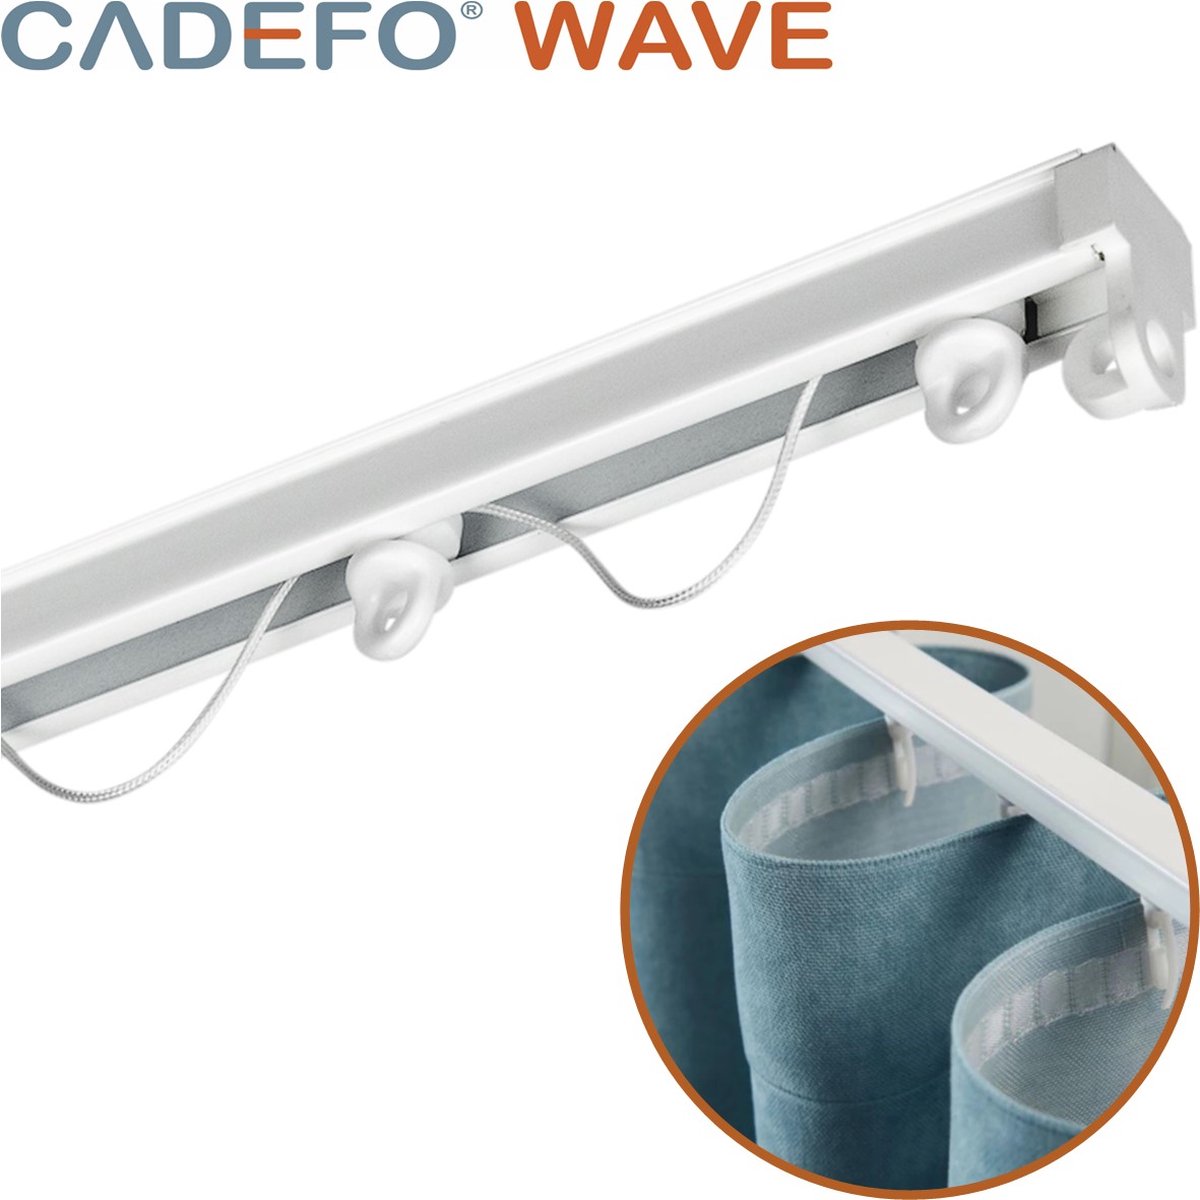 CADEFO WAVE (551 - 600 cm) Gordijnrails - Compleet op maat! - UIT 1 STUK - Leverbaar tot 6 meter - Plafondbevestiging - Lengte 559 cm